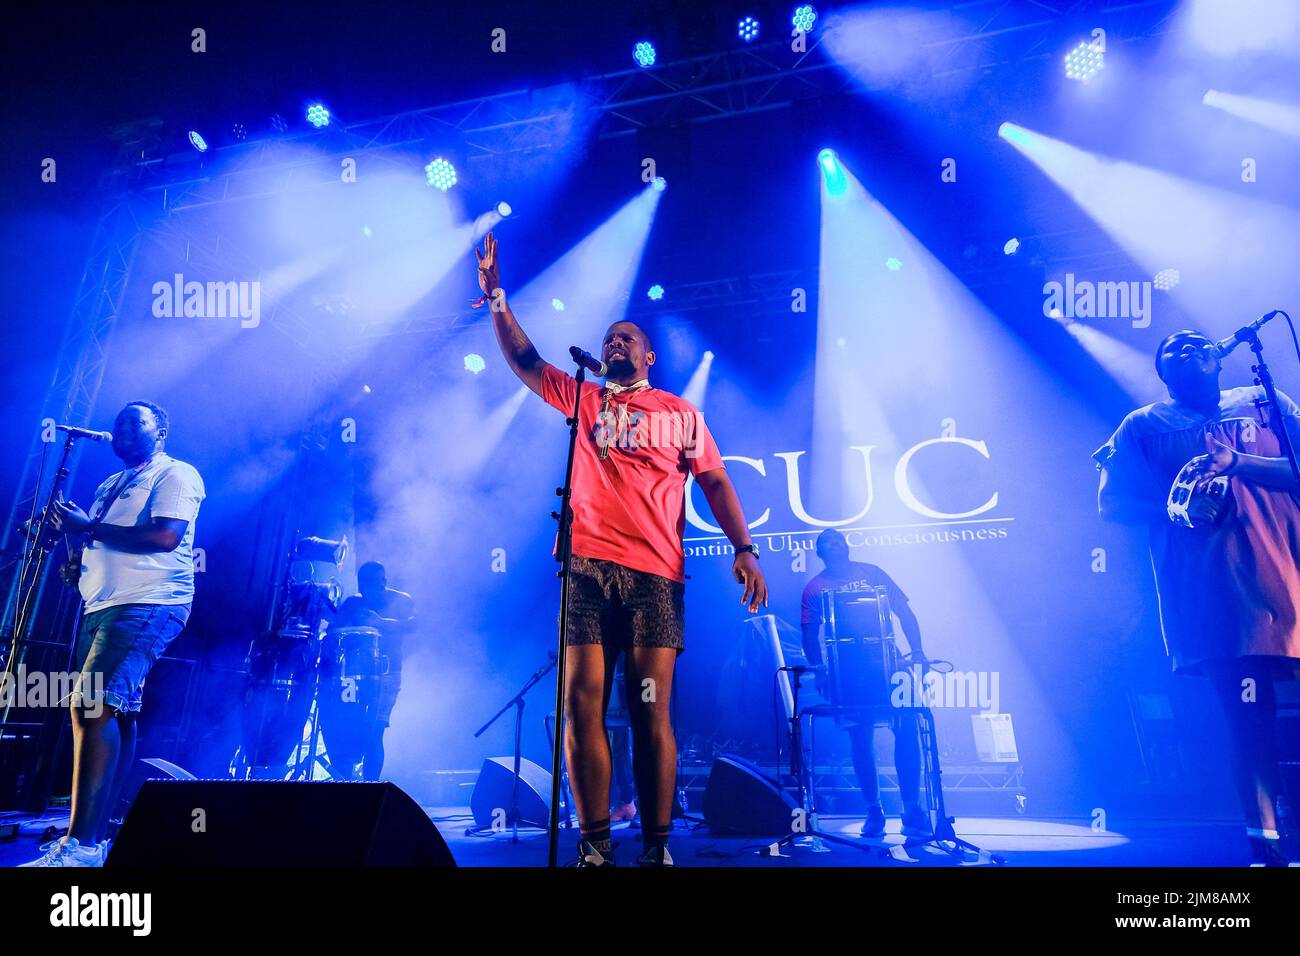 BCUC (Bantu continua Uhuru Consciousness ) fotografato durante il WOMAD 40th (World of Music Arts and Dance) tenuto a Charrlton Park , Malmesbury venerdì 29 luglio 2022 . Foto di Julie Edwards. Foto Stock